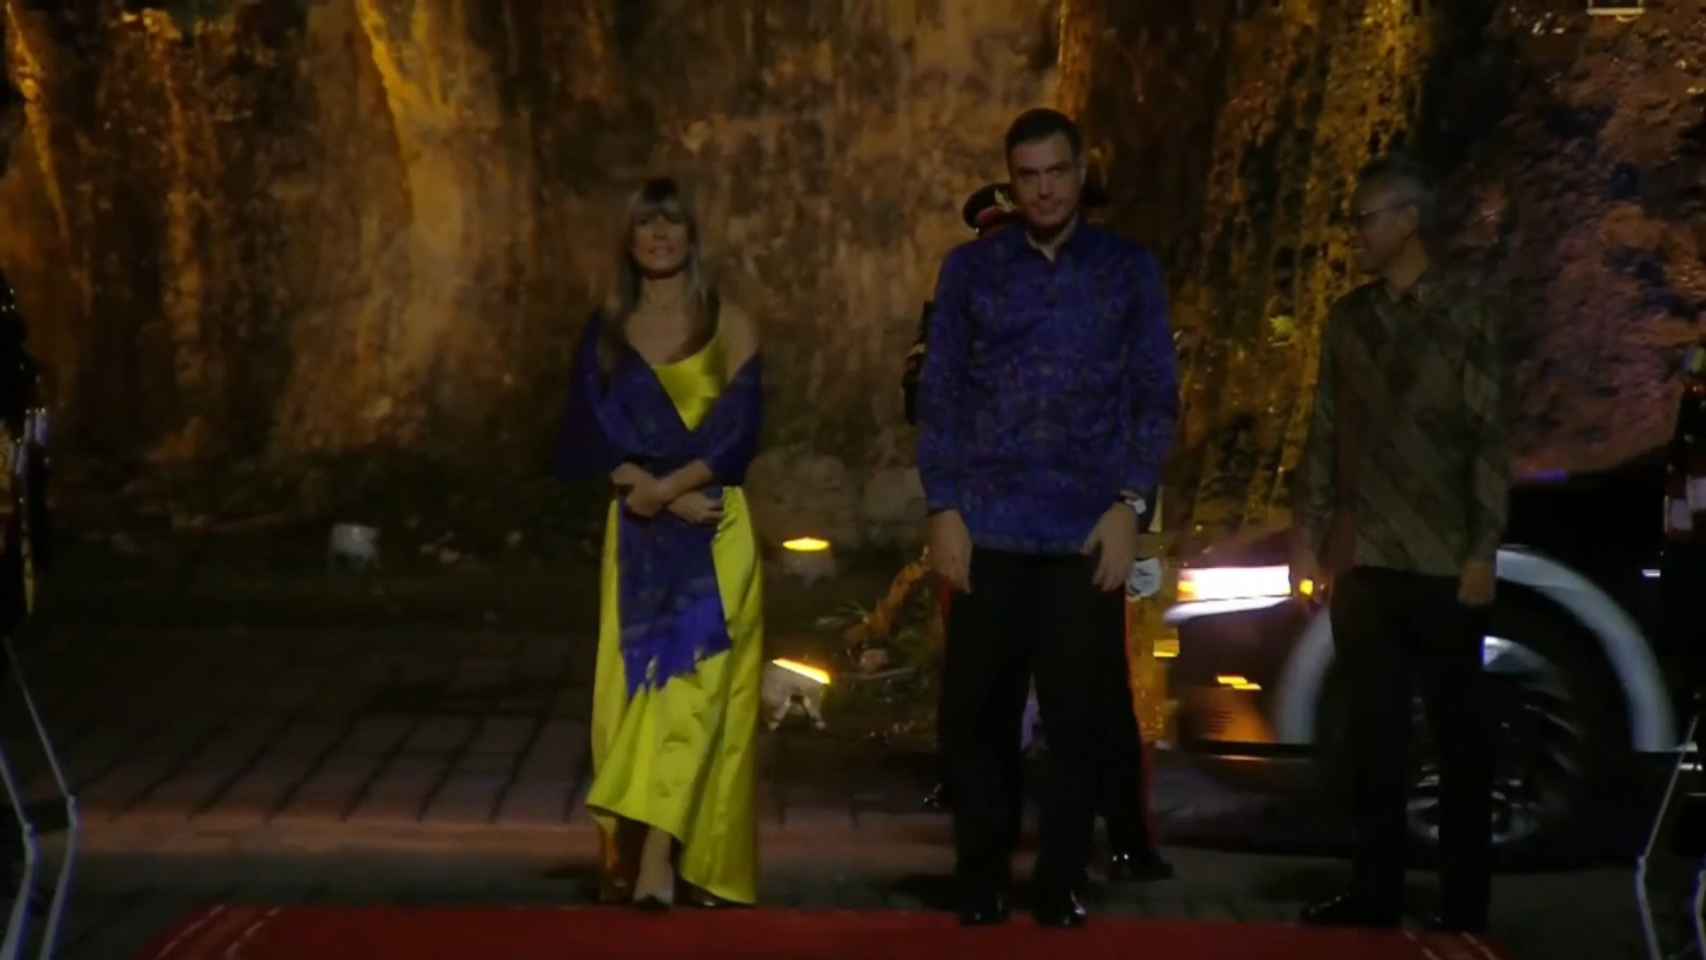 El presidente español llega a la cena de bienvenida del G20 junto a su esposa